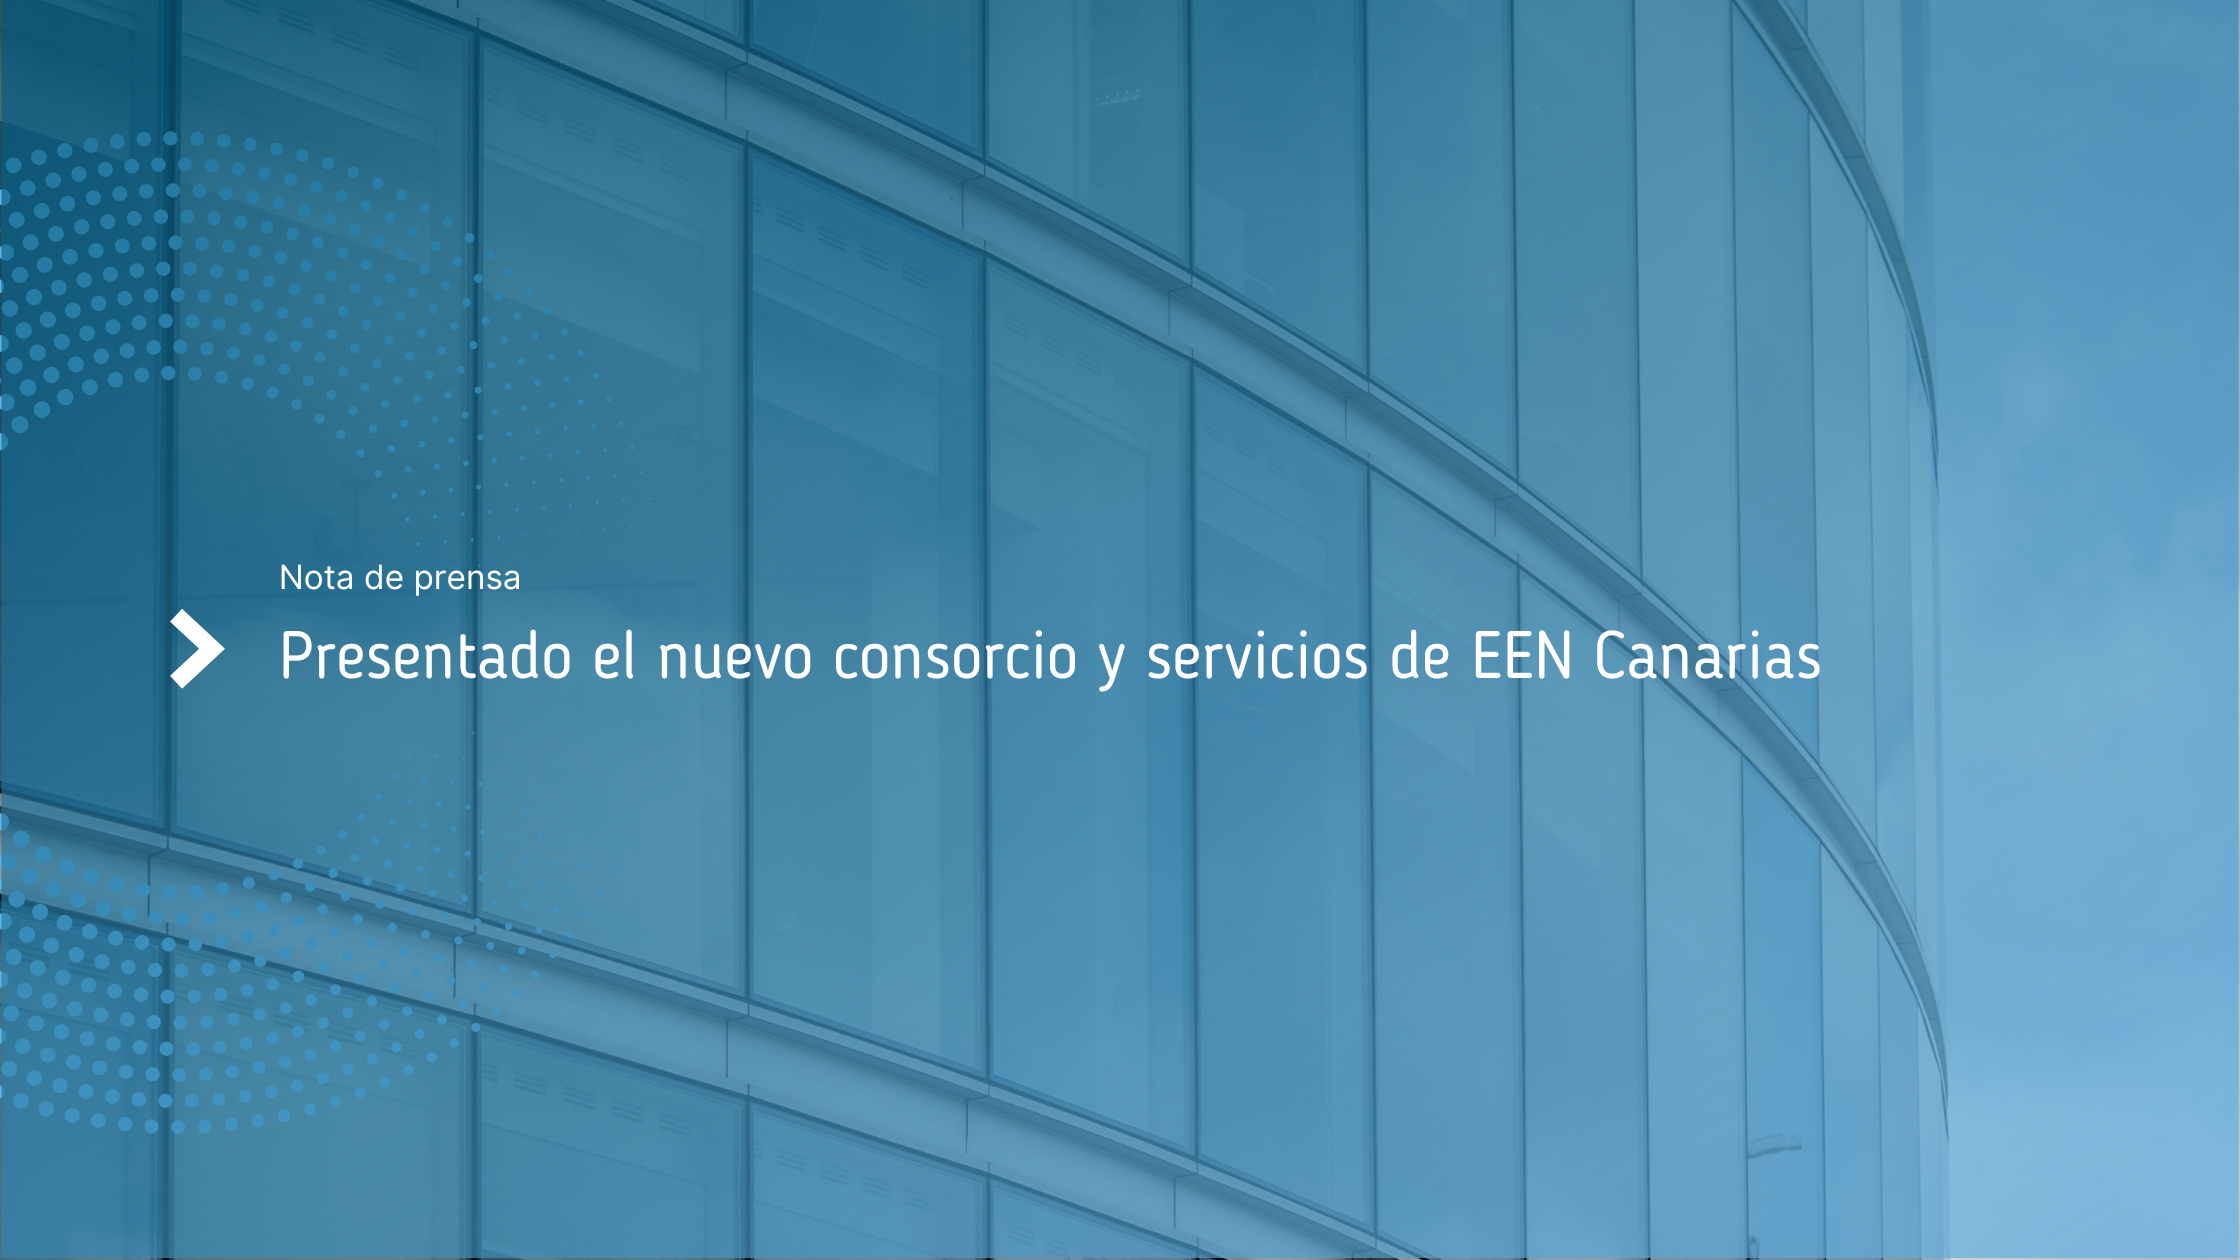 Presentado_el_nuevo_consorcio_y_servicios_de_EEN_Canarias